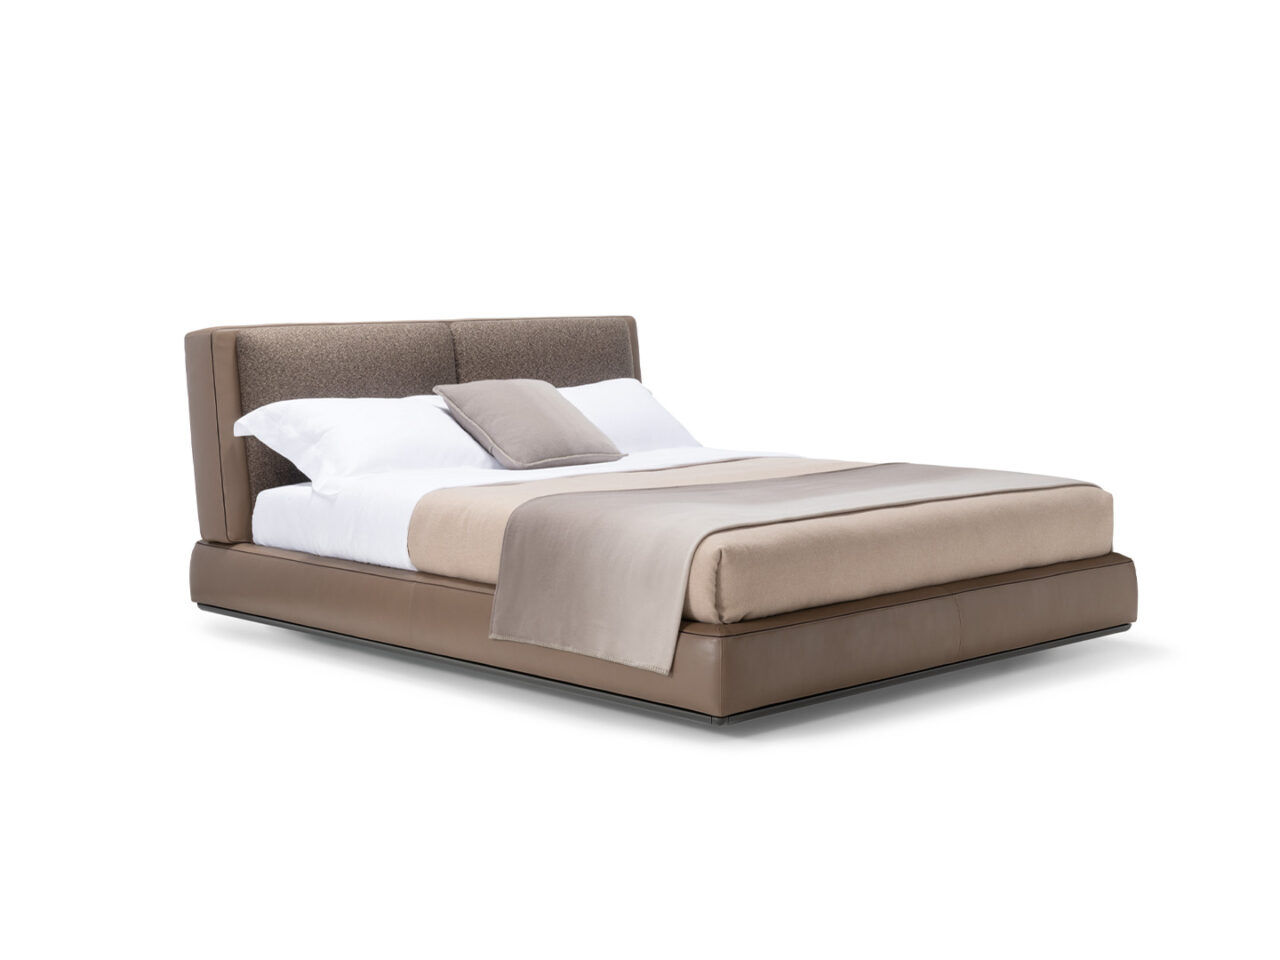 Aldgate est un lit conçu par Rodolfo Dordoni et proposé par Peverelli.